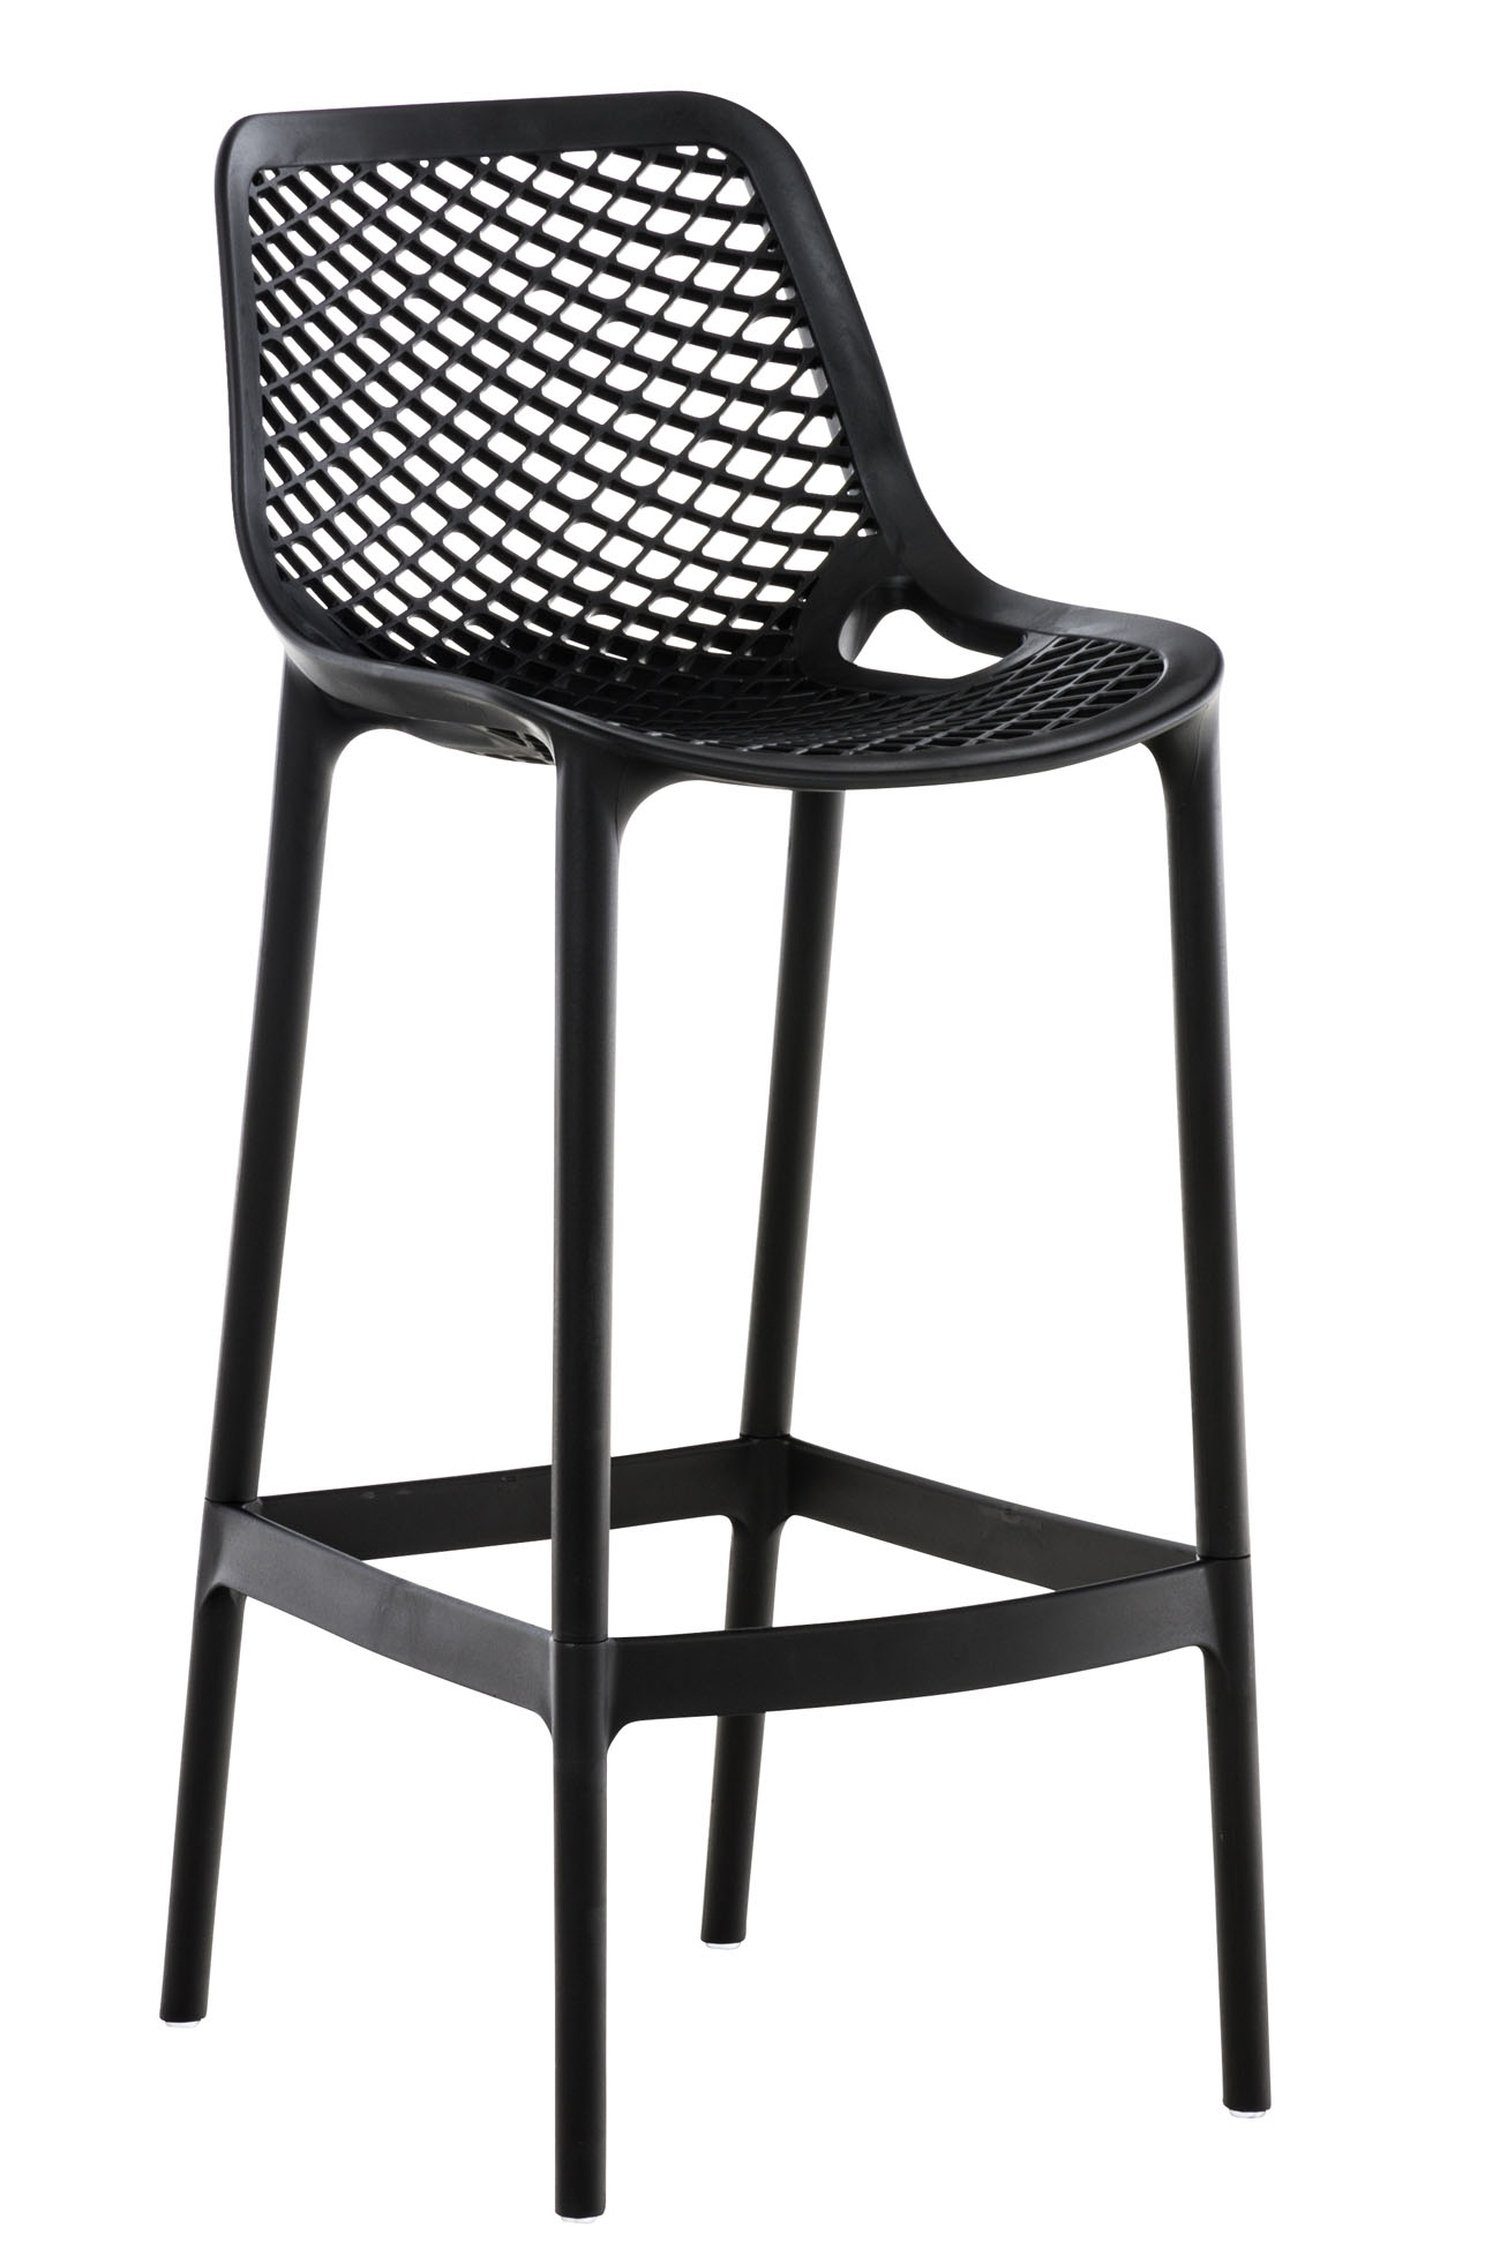 TPFLiving Barhocker Air (mit angenehmer Fußstütze - Hocker für Theke & Küche), Gestell Kunststoff - Sitzfläche: Kunststoff Schwarz